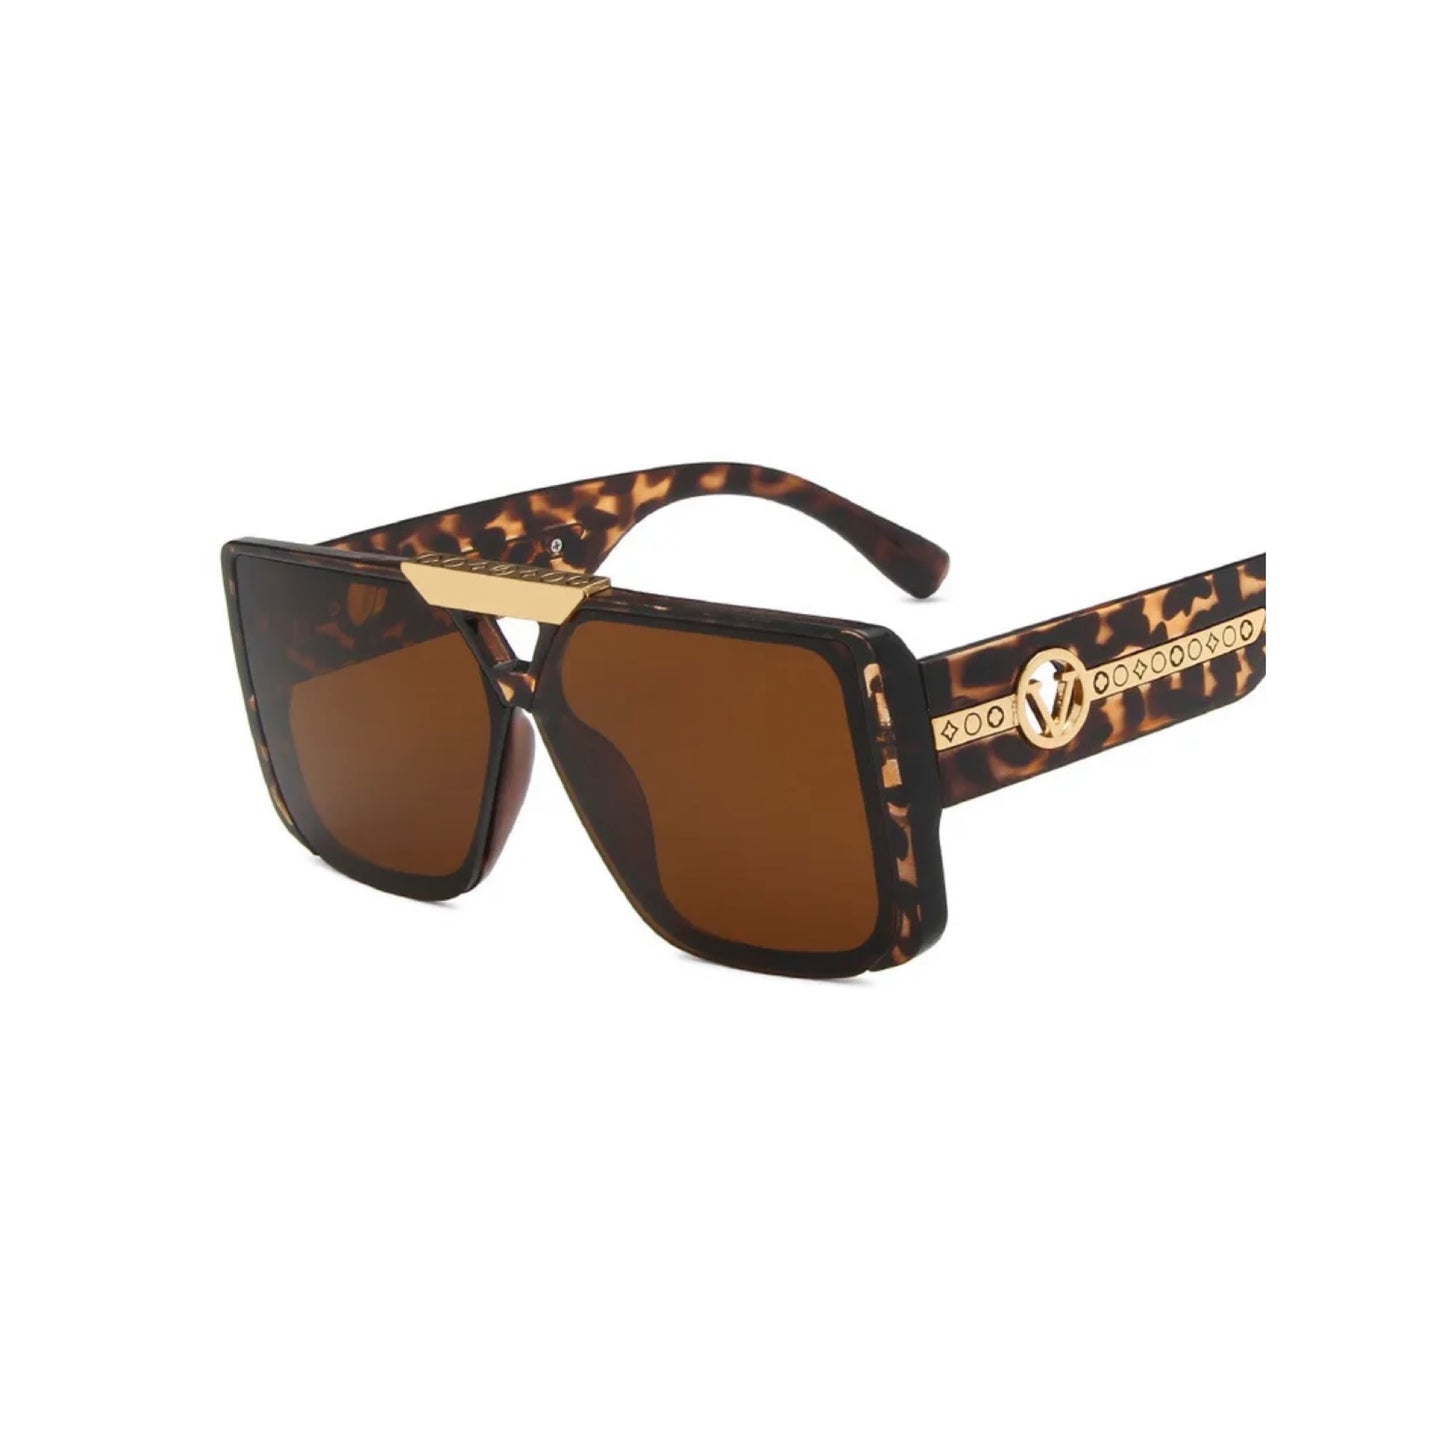 miami sunglasses cute sunglasses for women luxury sunglasses for women light sunglasses  luxury shades leopard sunglasses